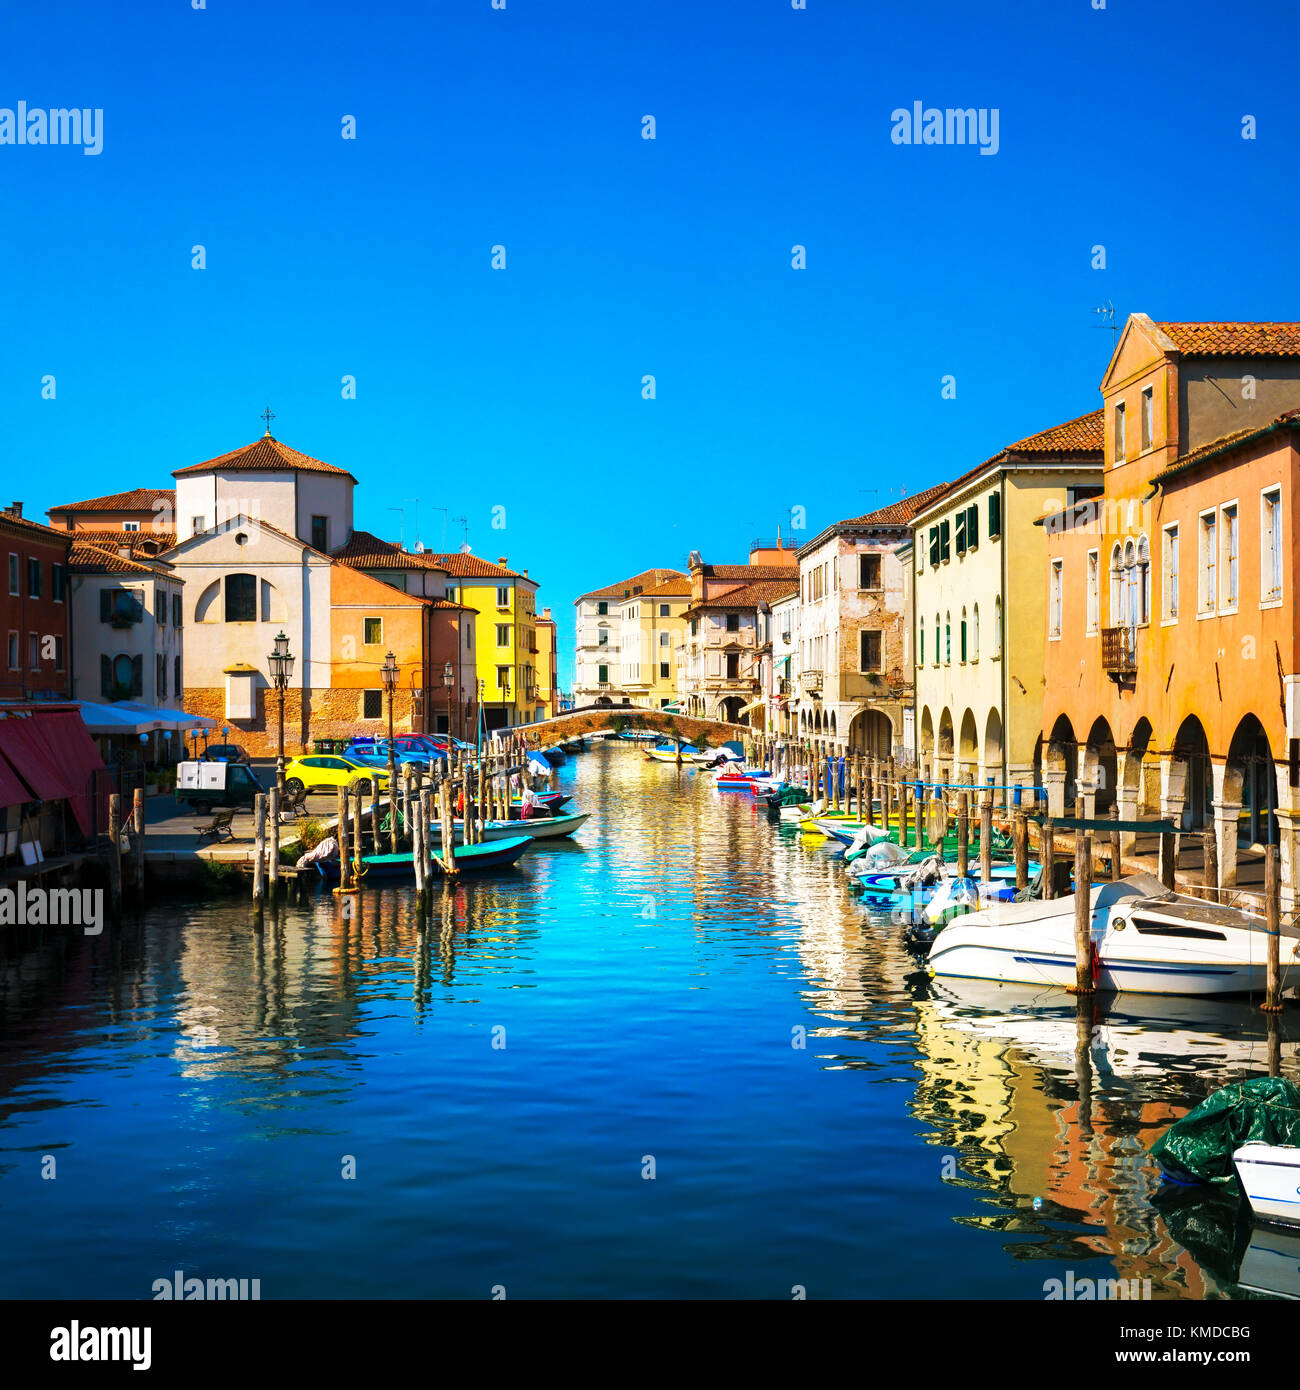 Dans la ville de Chioggia, lagune de Venise, de l'eau canal et l'église. Veneto, Italie, Europe Banque D'Images